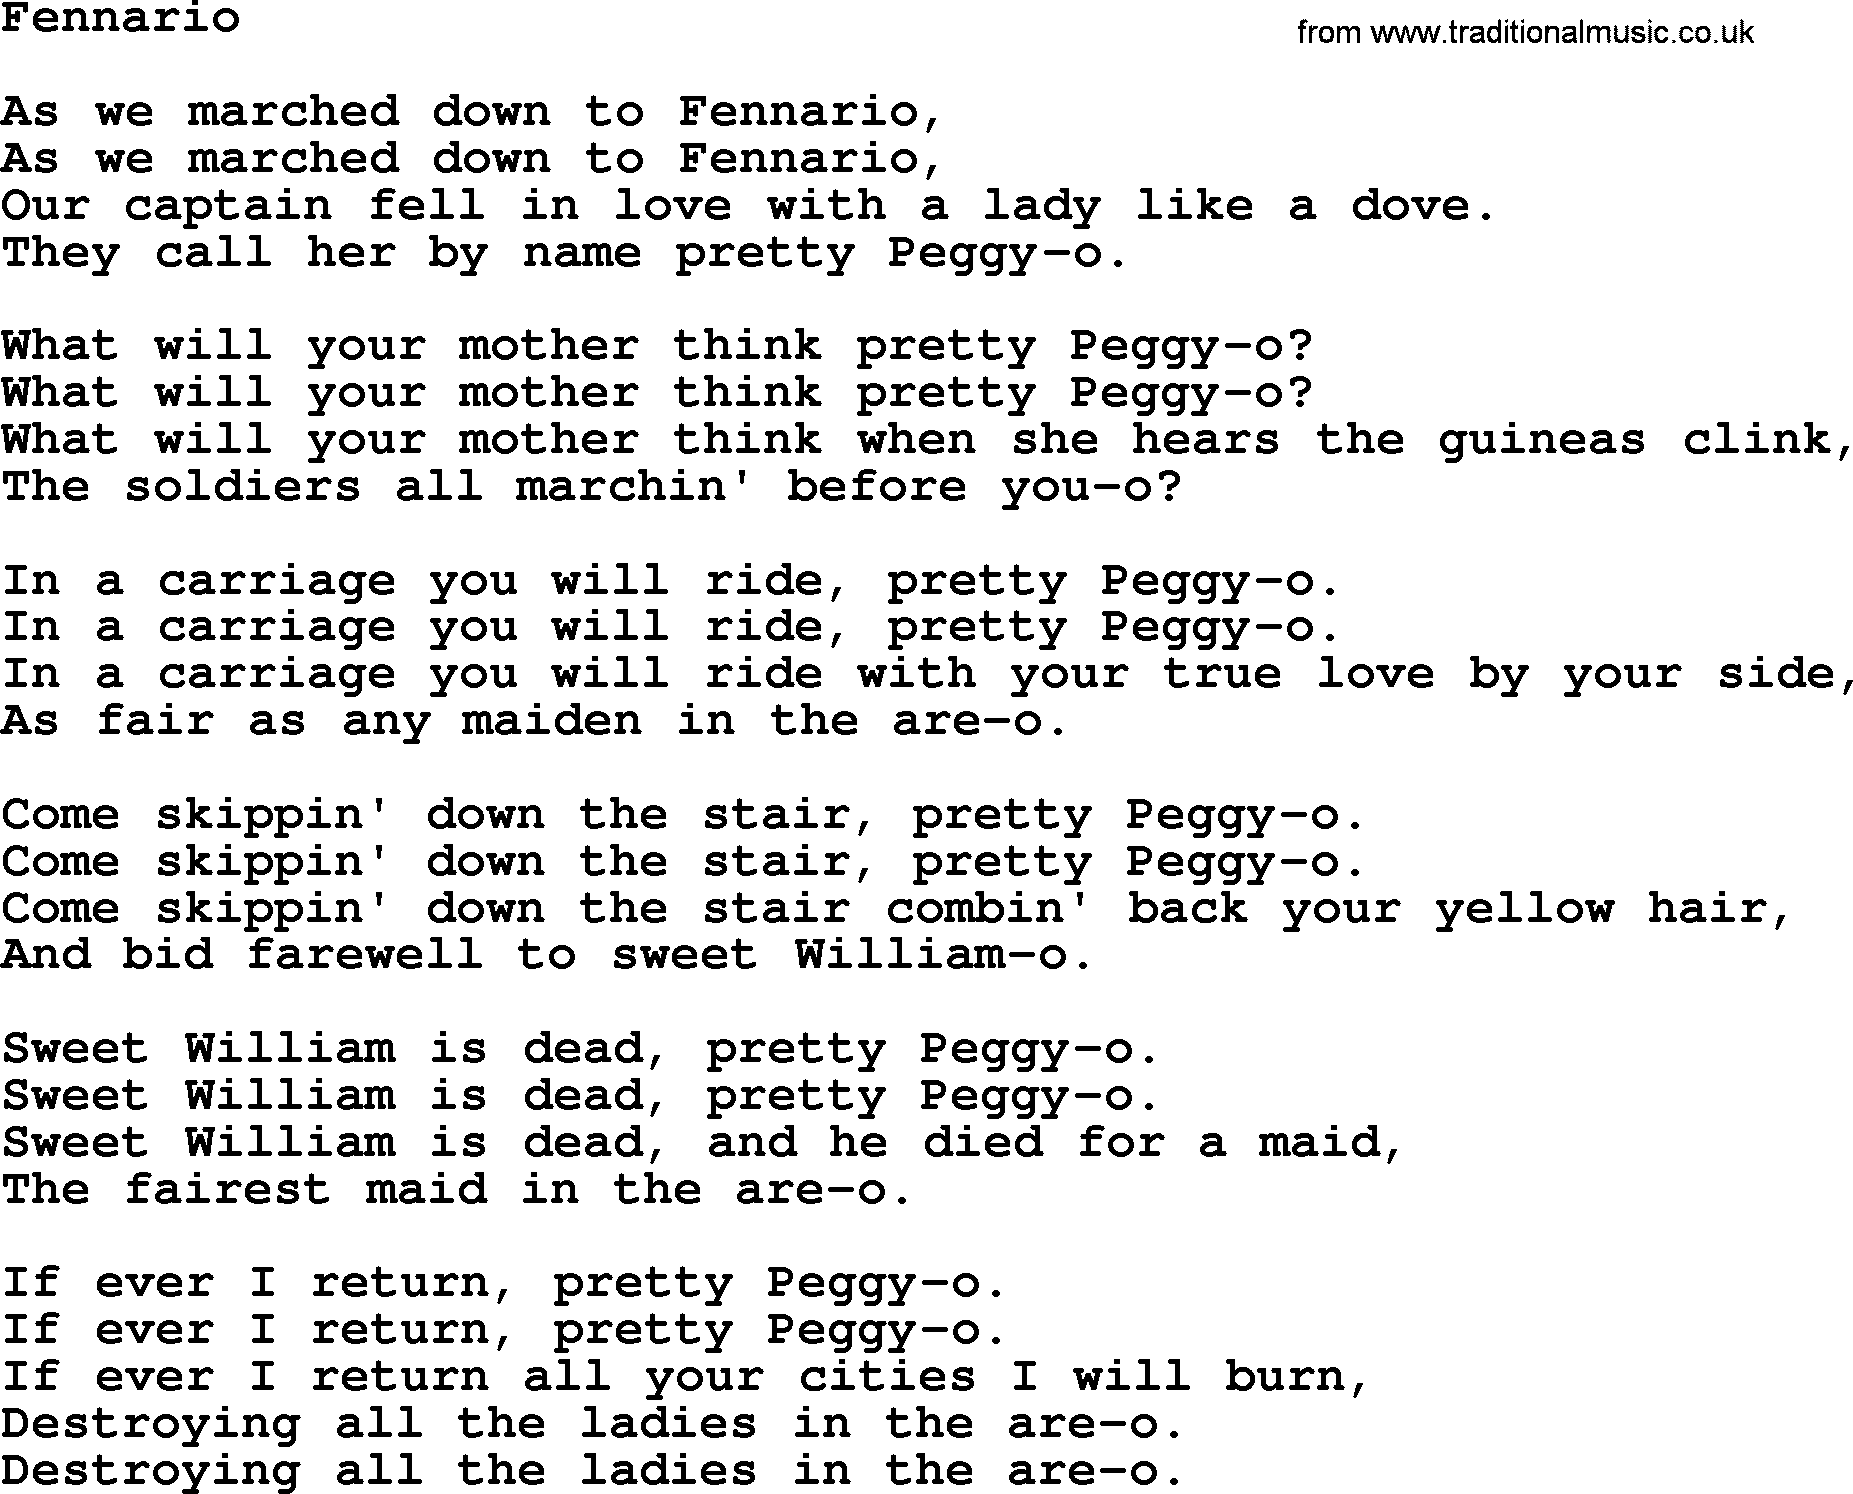 Joan Baez song Fennario, lyrics